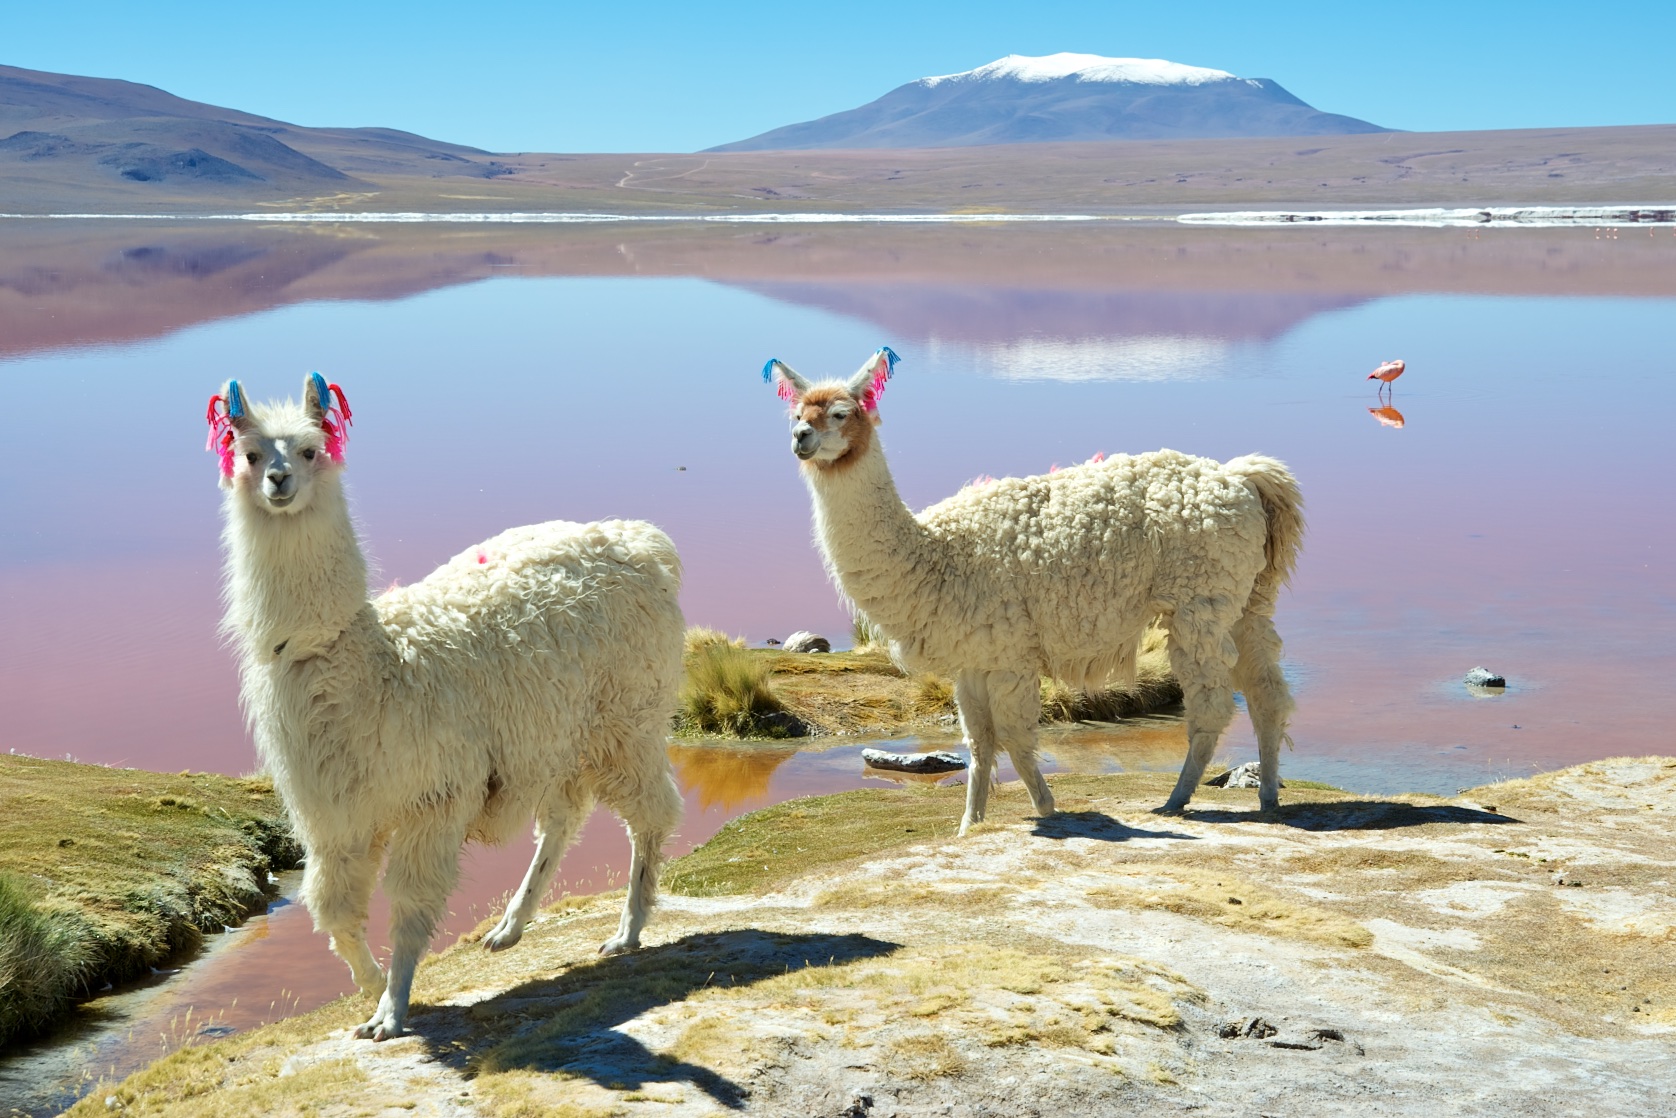  Llamas at Laguna Colorado, Eduardo Avaroa National Park, Bolivia 